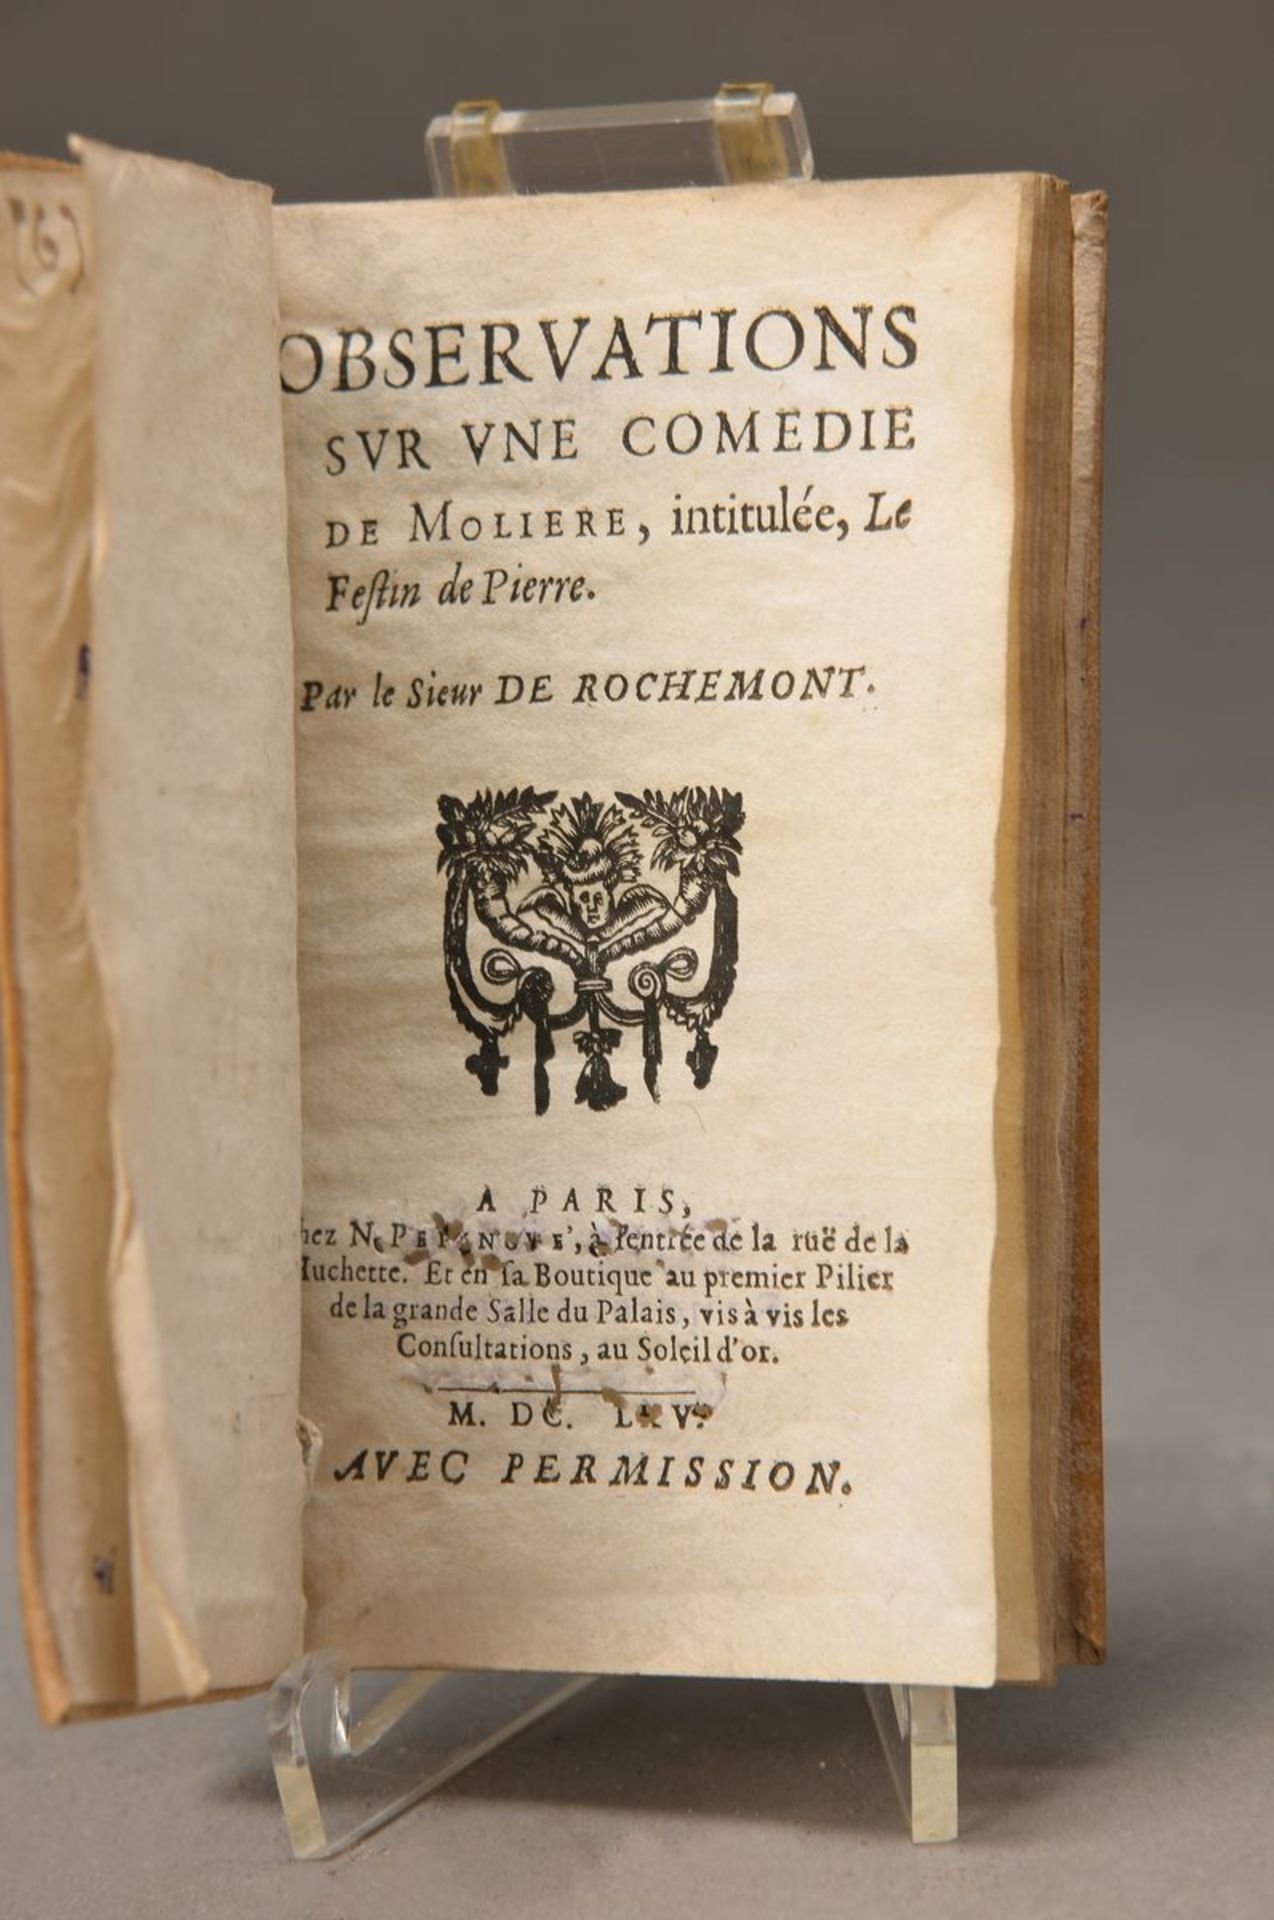 Observations svr vne comedie, Paris, 1667, Ledereinband, ca. 48 Seiten, selten im